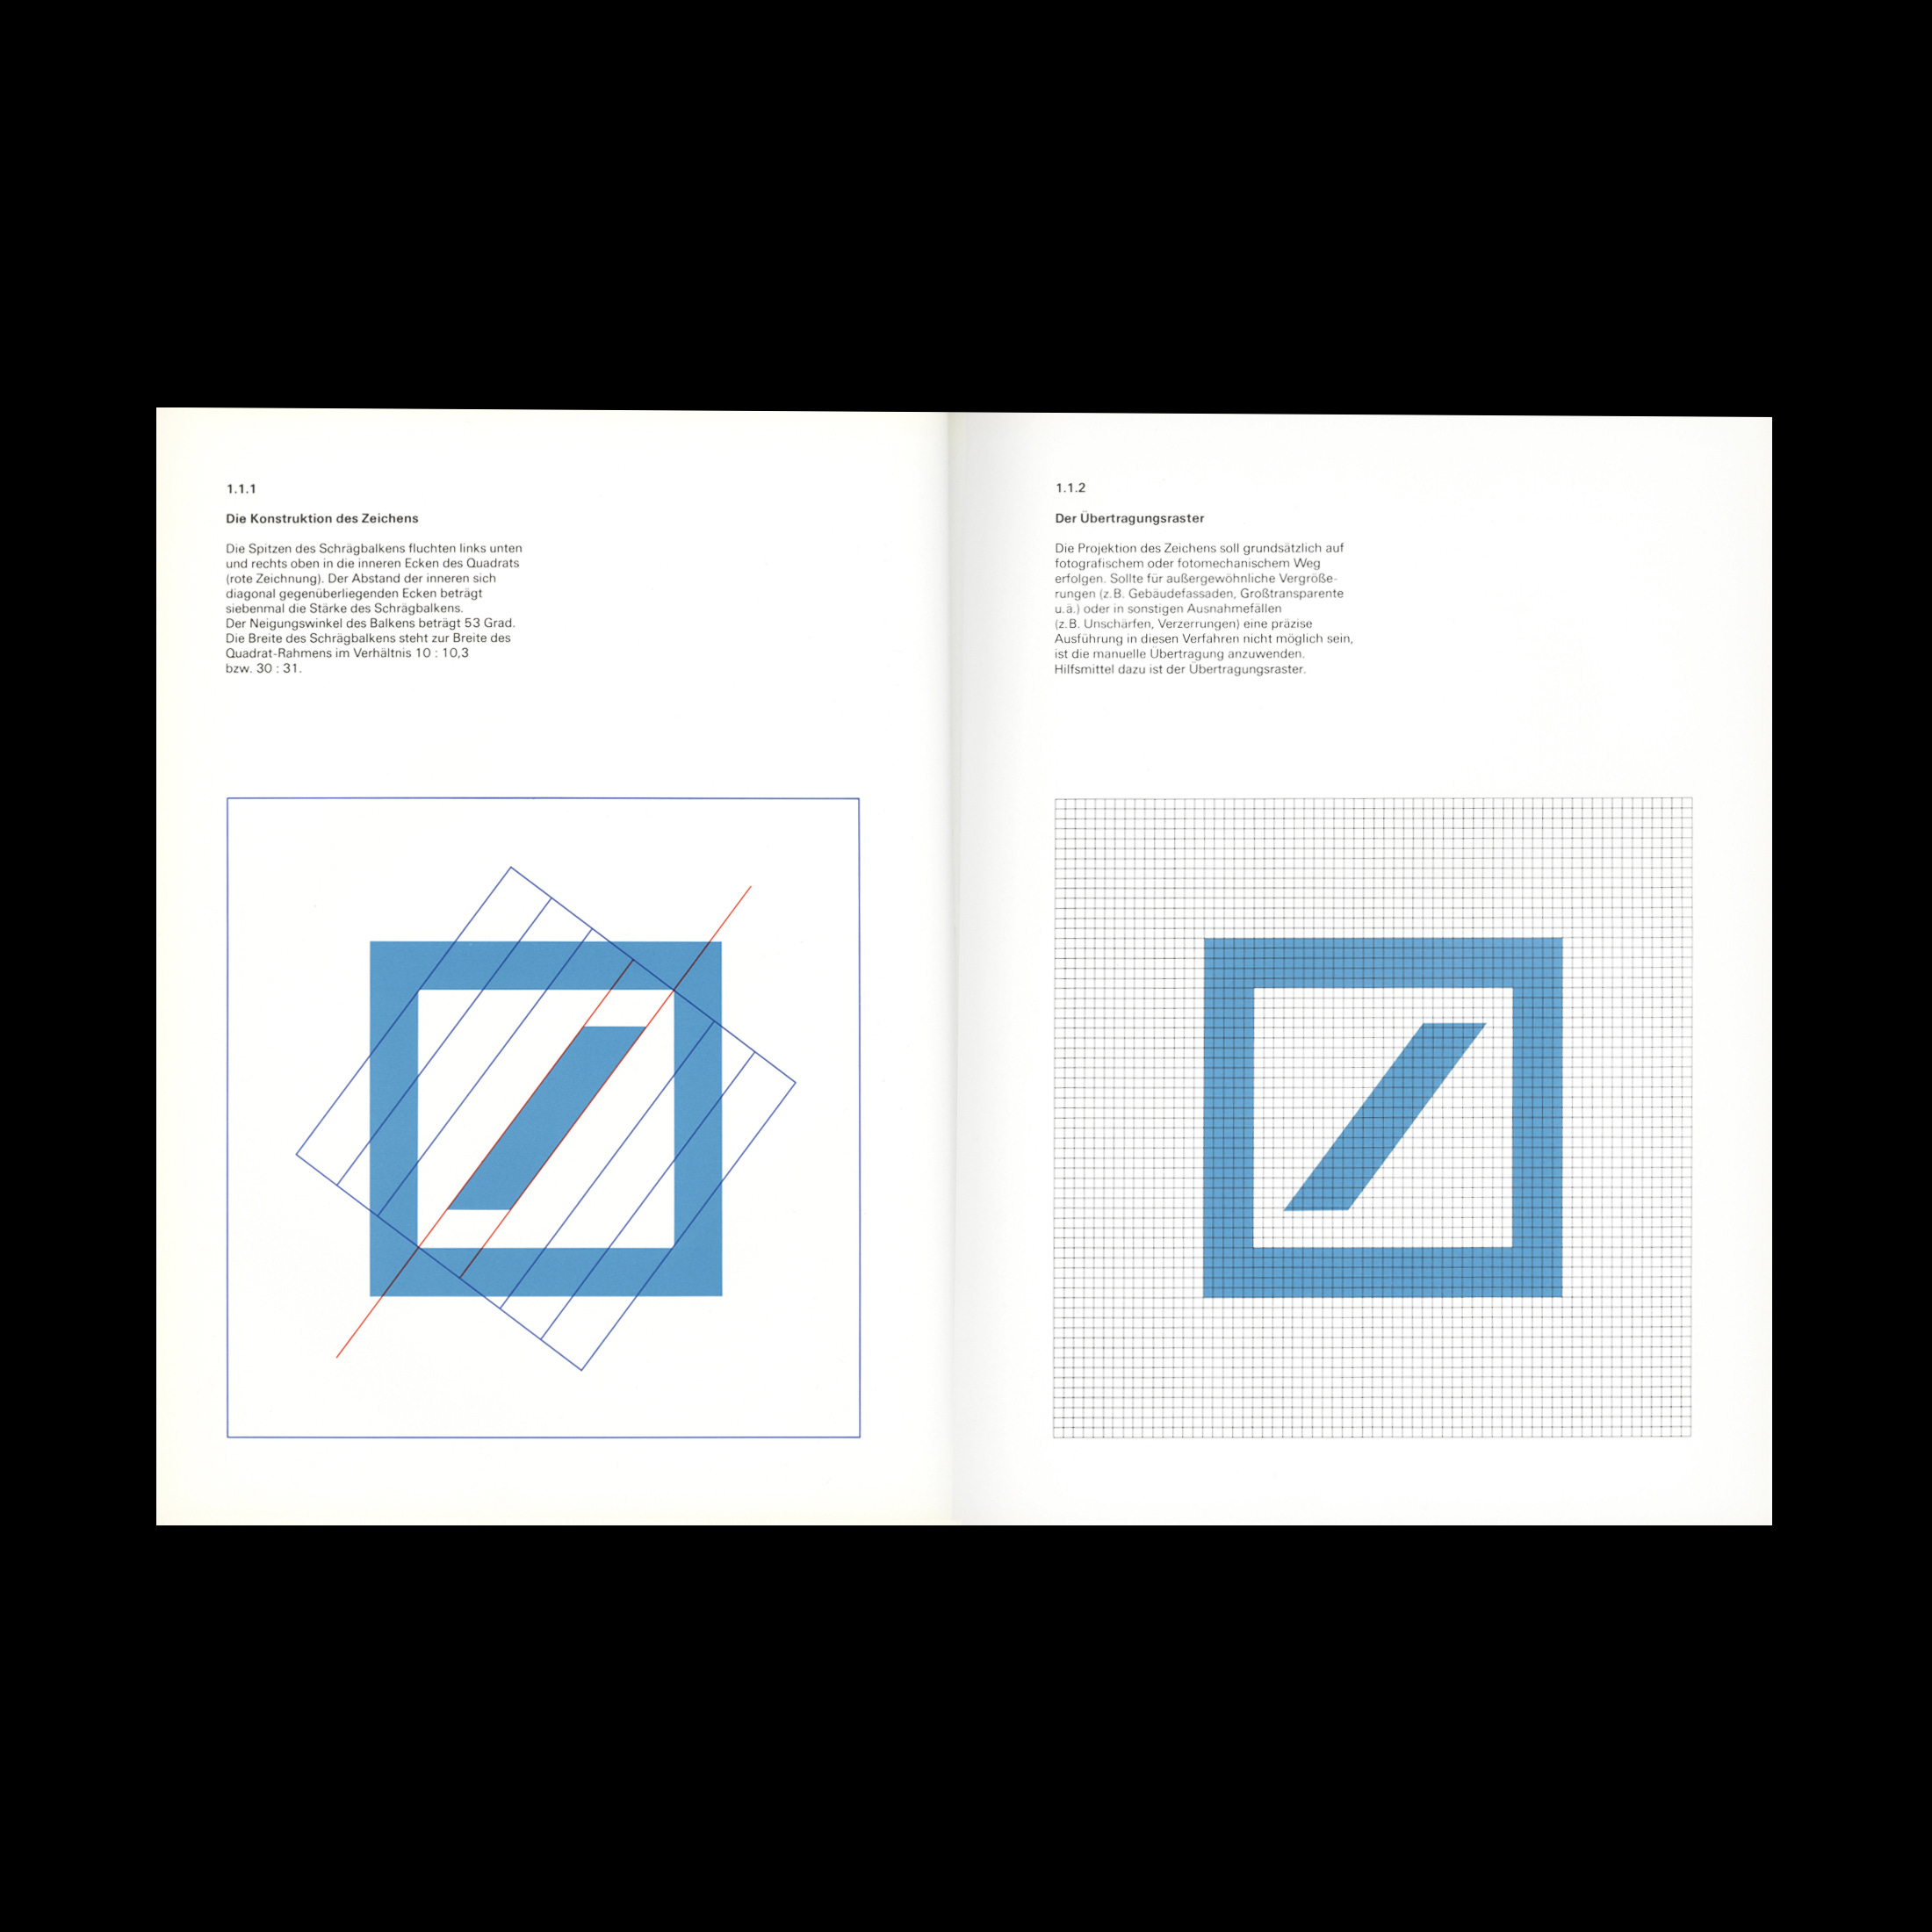 Deutsche Bank Logo Design History - by Poppy Thaxter